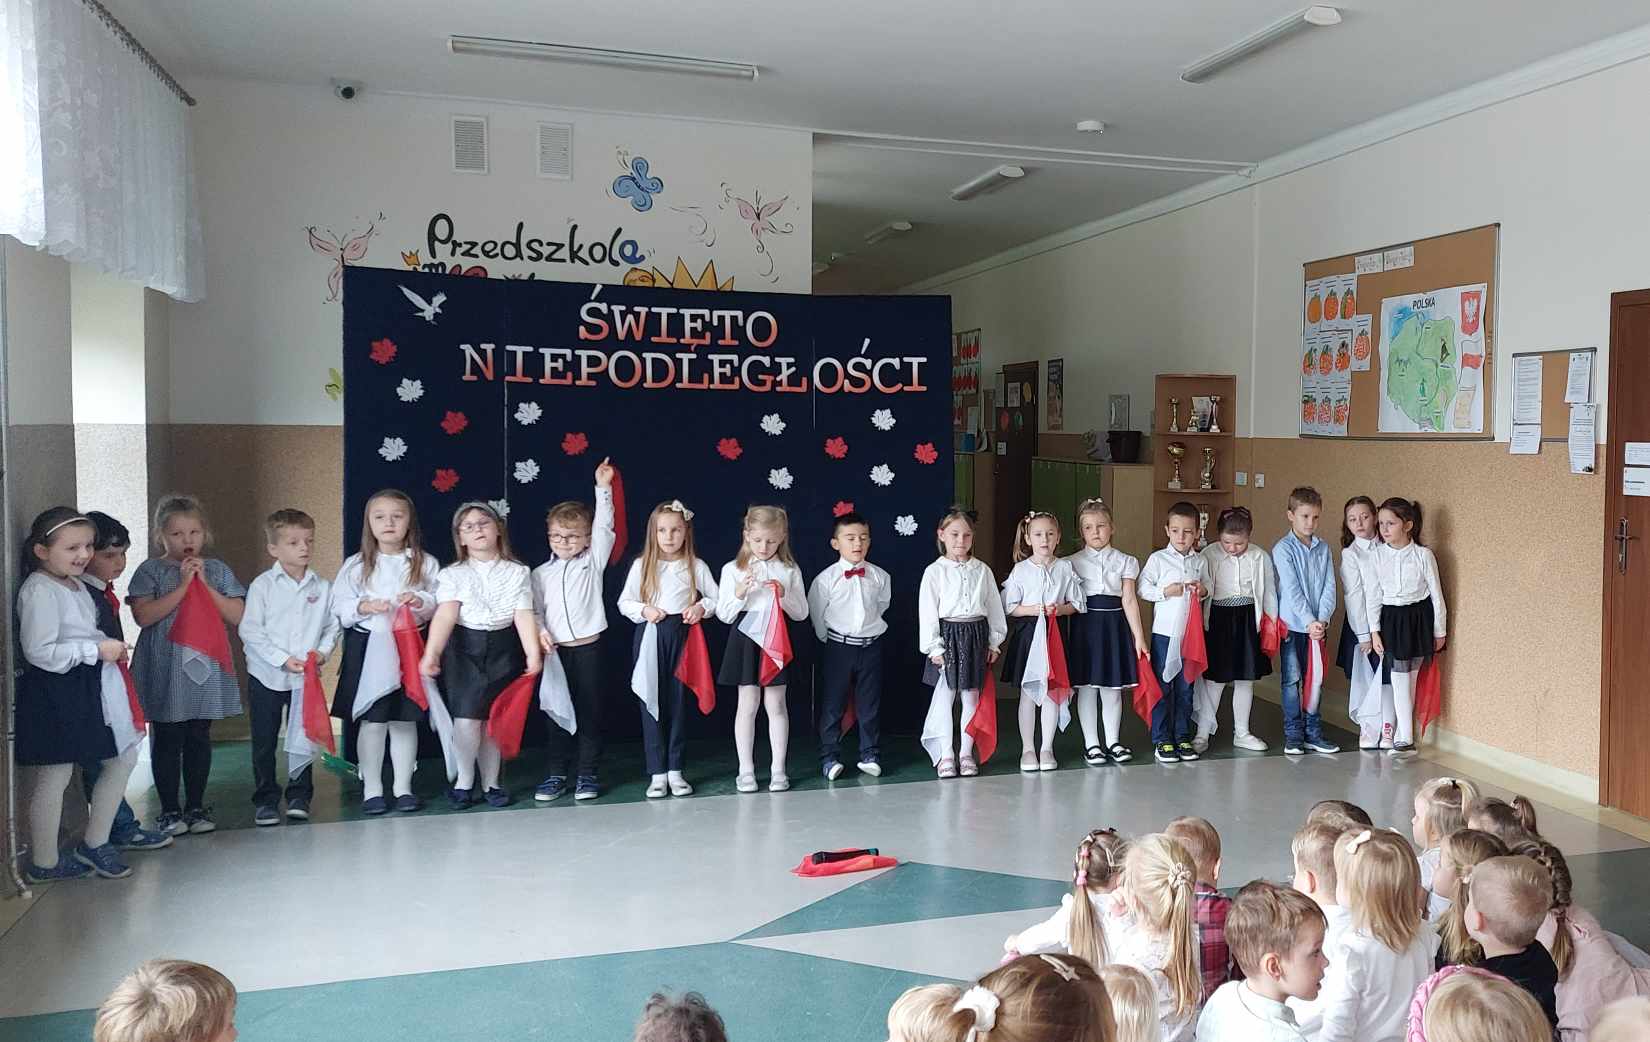 Dzieci z grupy Odkrywców są elegancko ubrane i występują podczas apelu. W tle widać tablicę z napisem "Święto Niepodległości". Na pierwszym planie widać widownię.